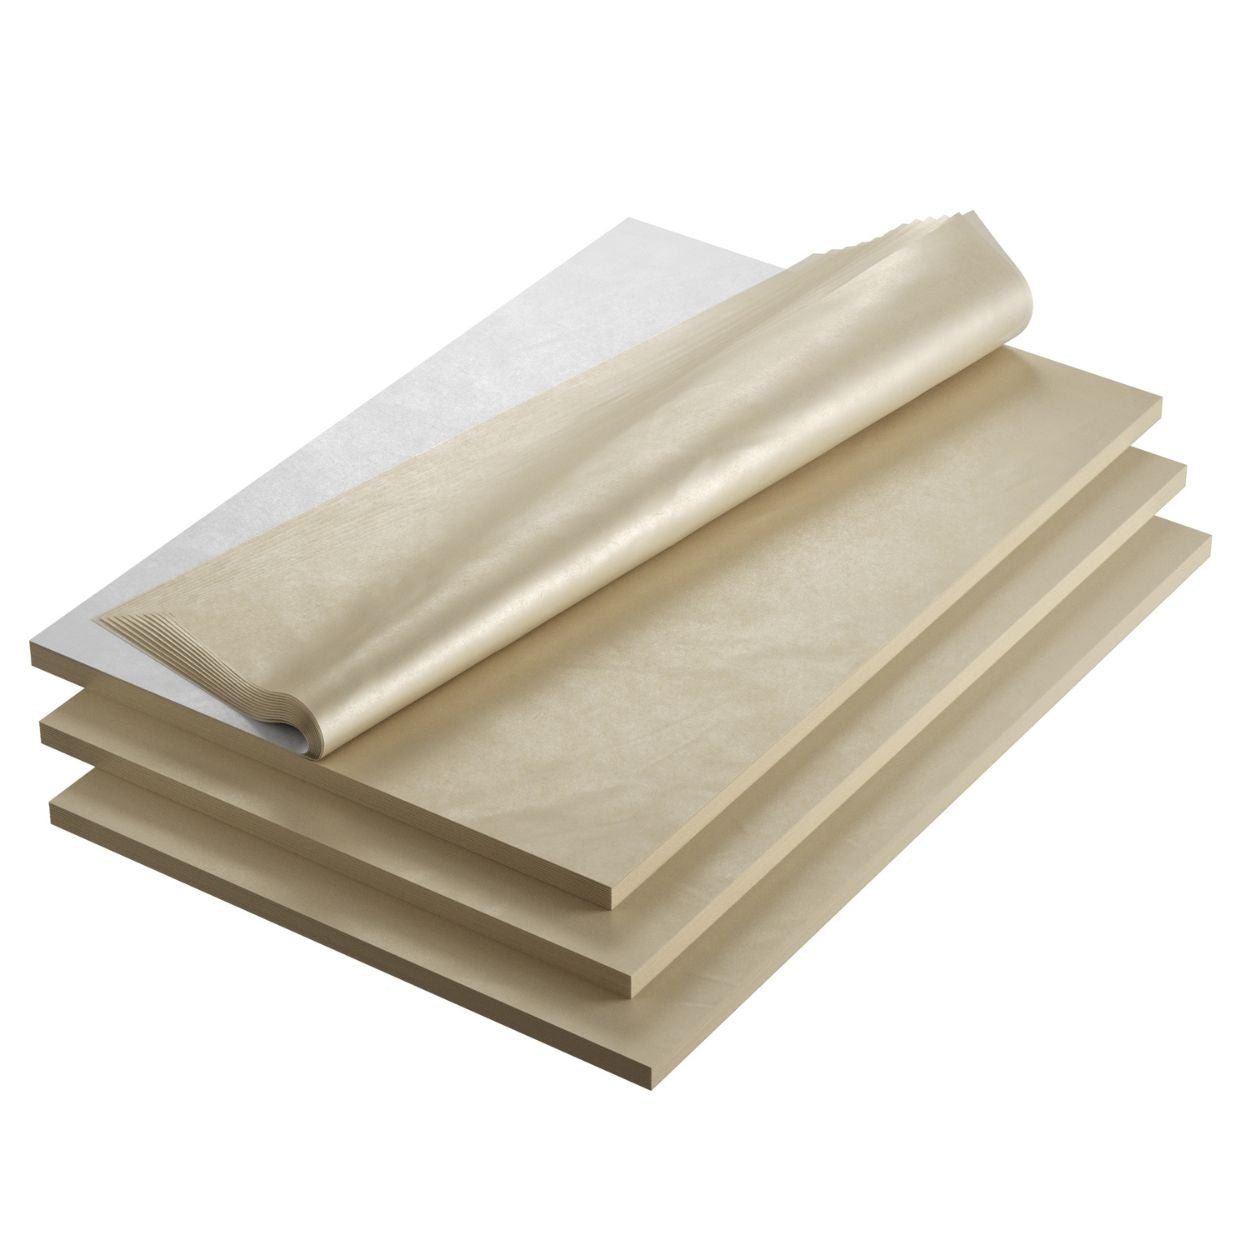 Tissue Paper 20X30 24/Pkg-3 Each Of 8 Pastel Colors - 081187882023